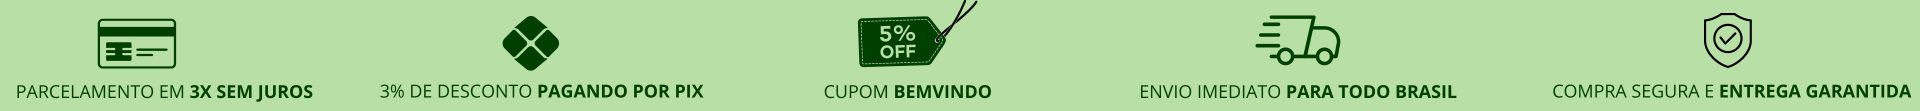 Cupom 5% Desconto - BEMVINDO